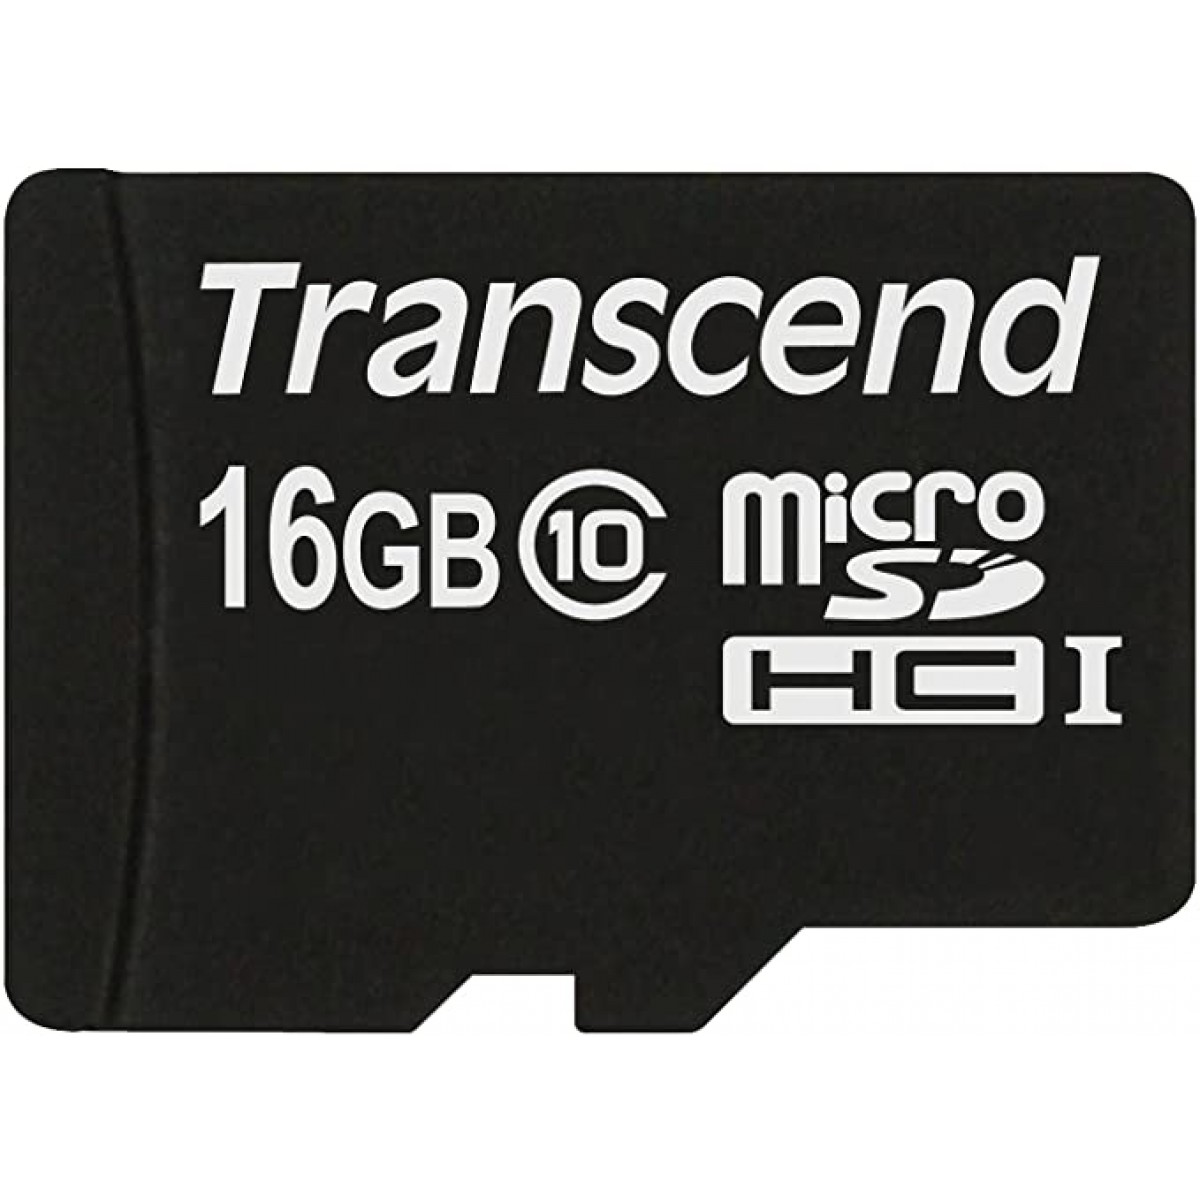 MICRO SDHC TRANSCEND 16GB CLASS 10 TS16GUSDC10